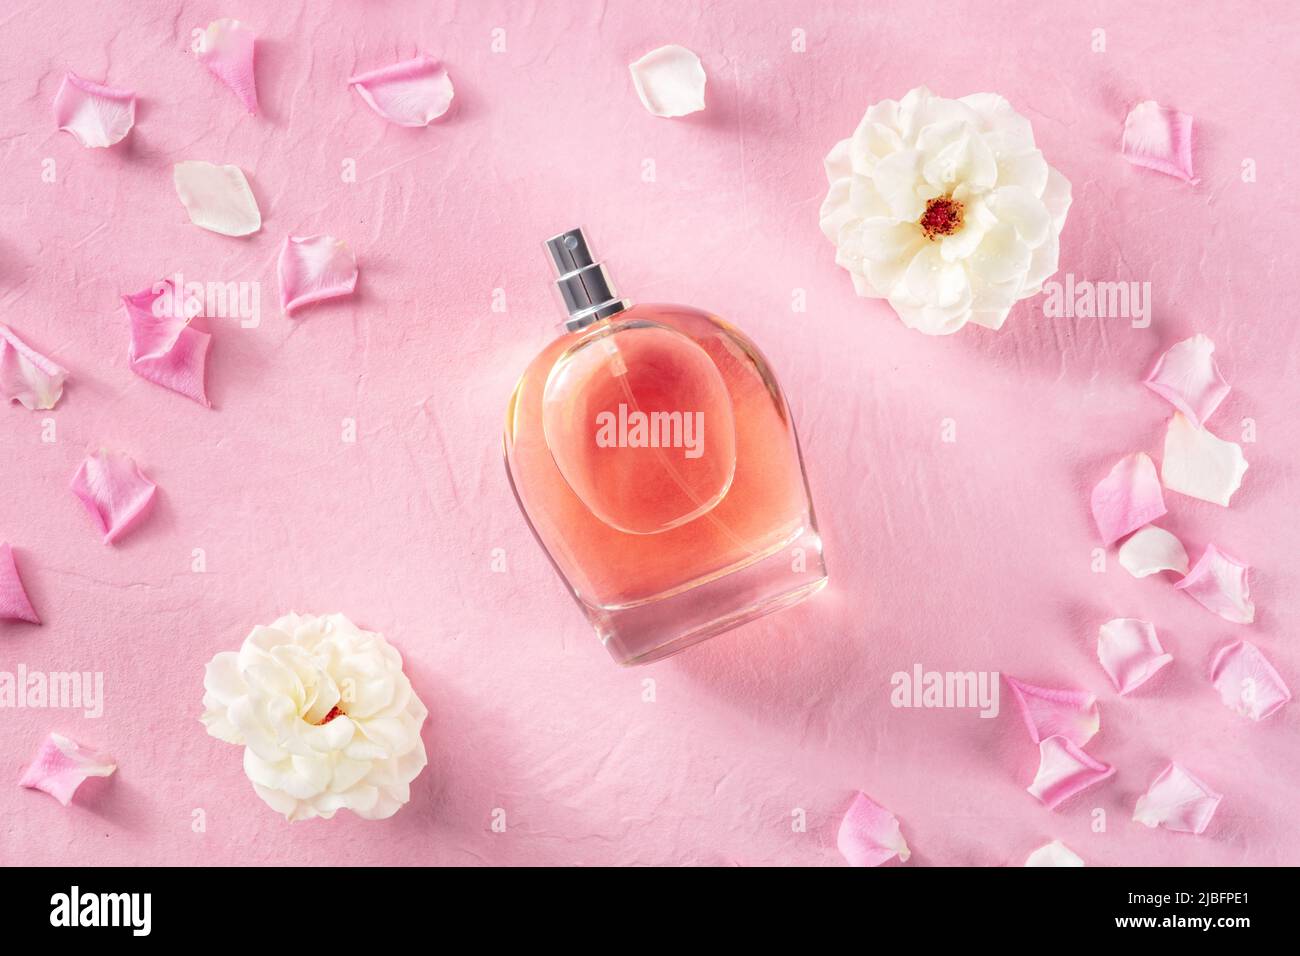 Concept de parfum. Une bouteille de parfum de rose, plat de dessus de lit  sur un fond rose avec des fleurs et des pétales frais, une essence florale  organique Photo Stock -